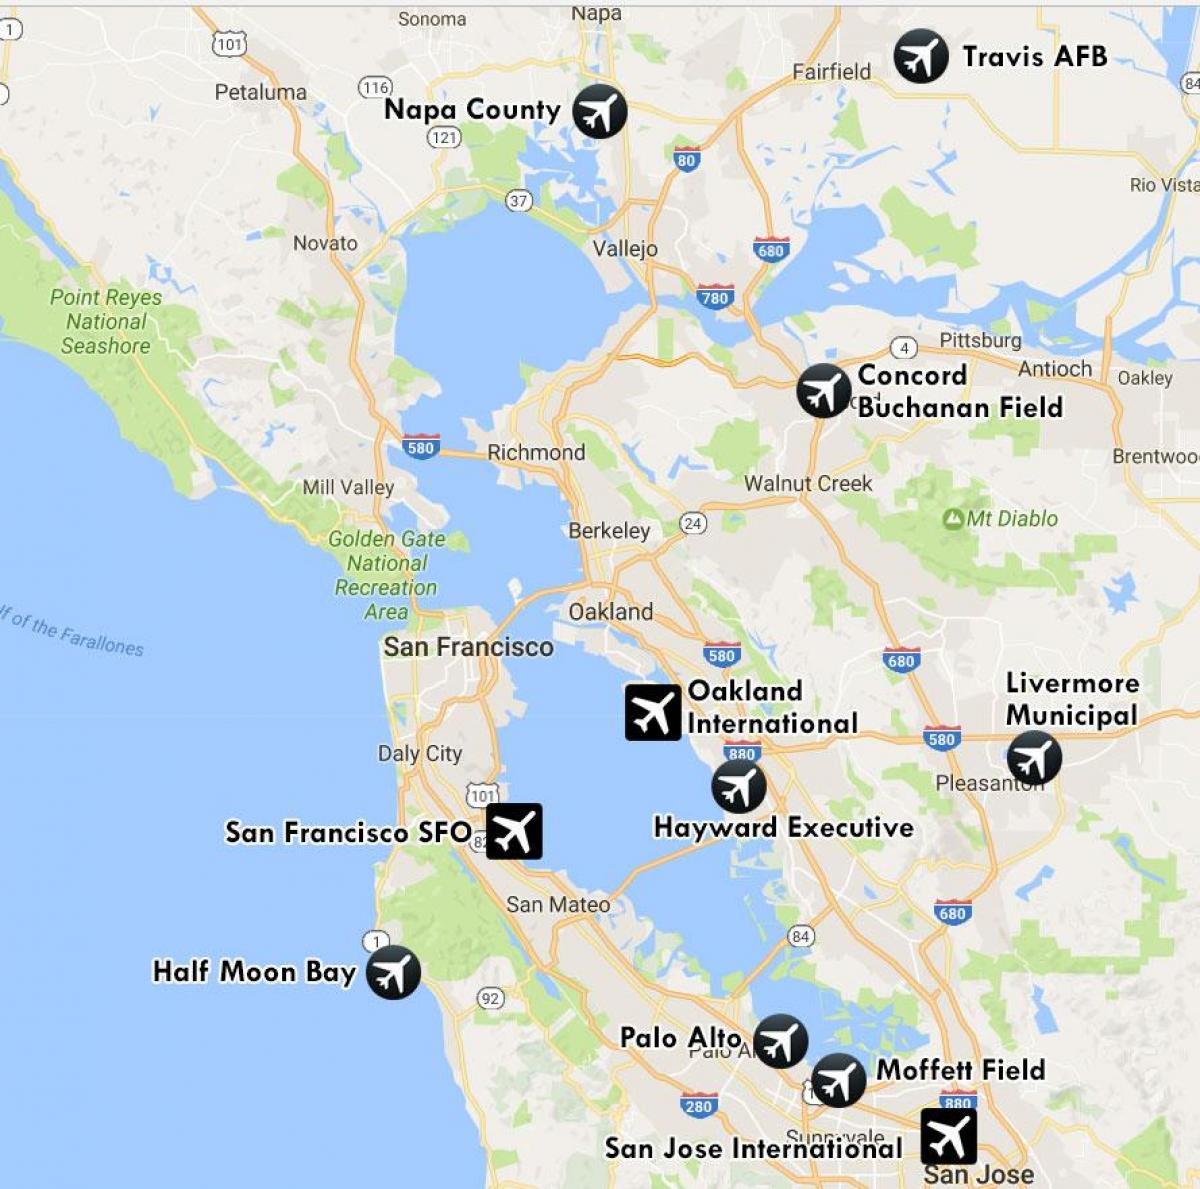 flyplasser i nærheten av San Francisco kart